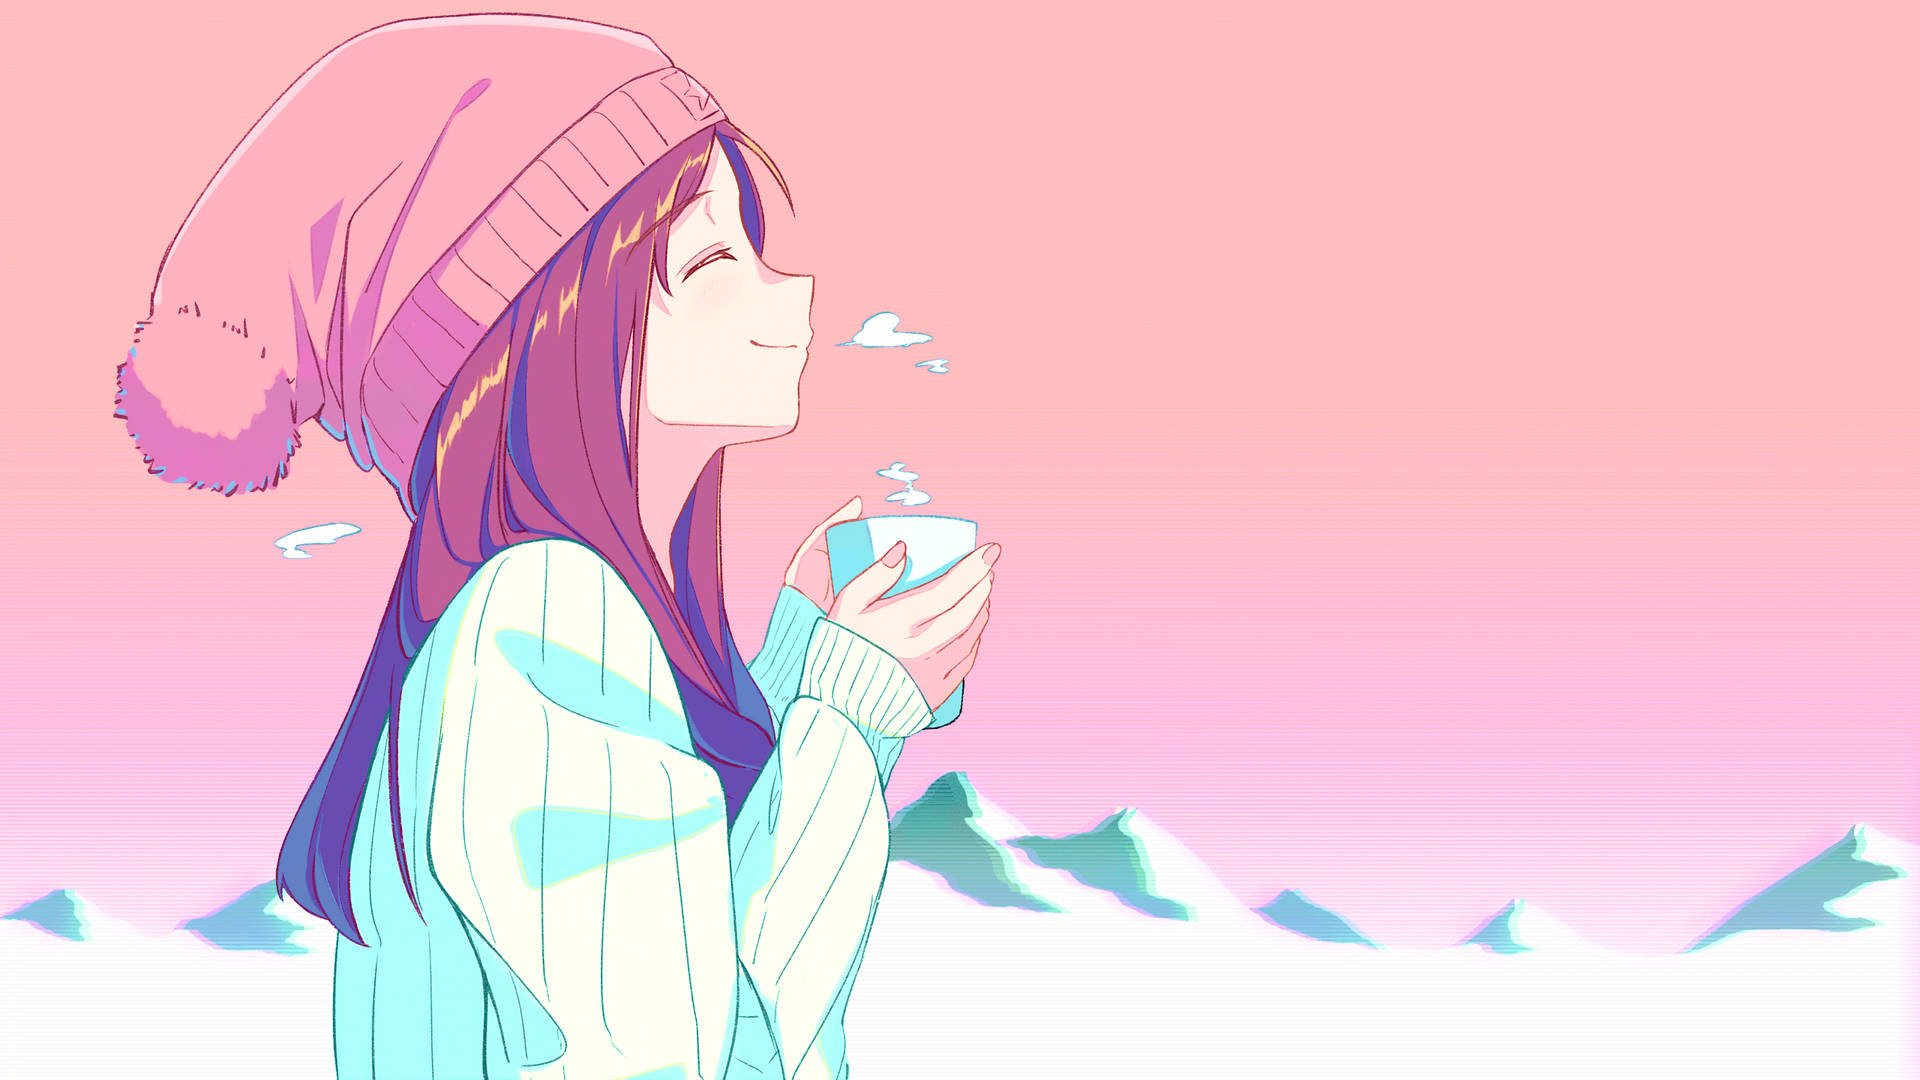 Aesthetic Anime Girl In Winter Background